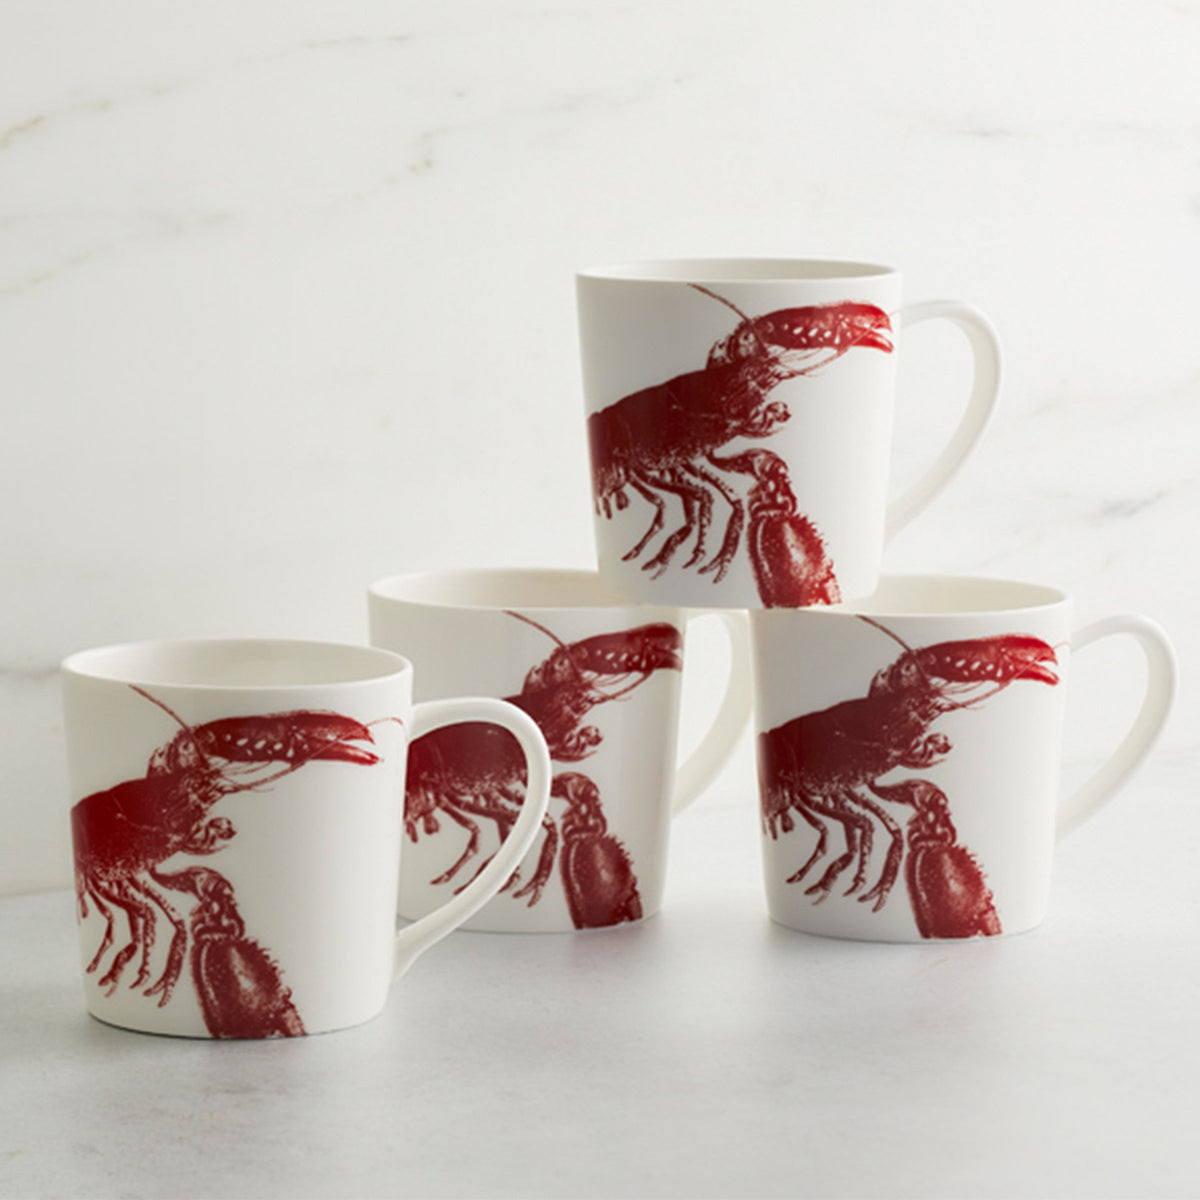 Four Caskata Artisanal Home Lobster Mug Reds perfect for serving chowda&#39;.